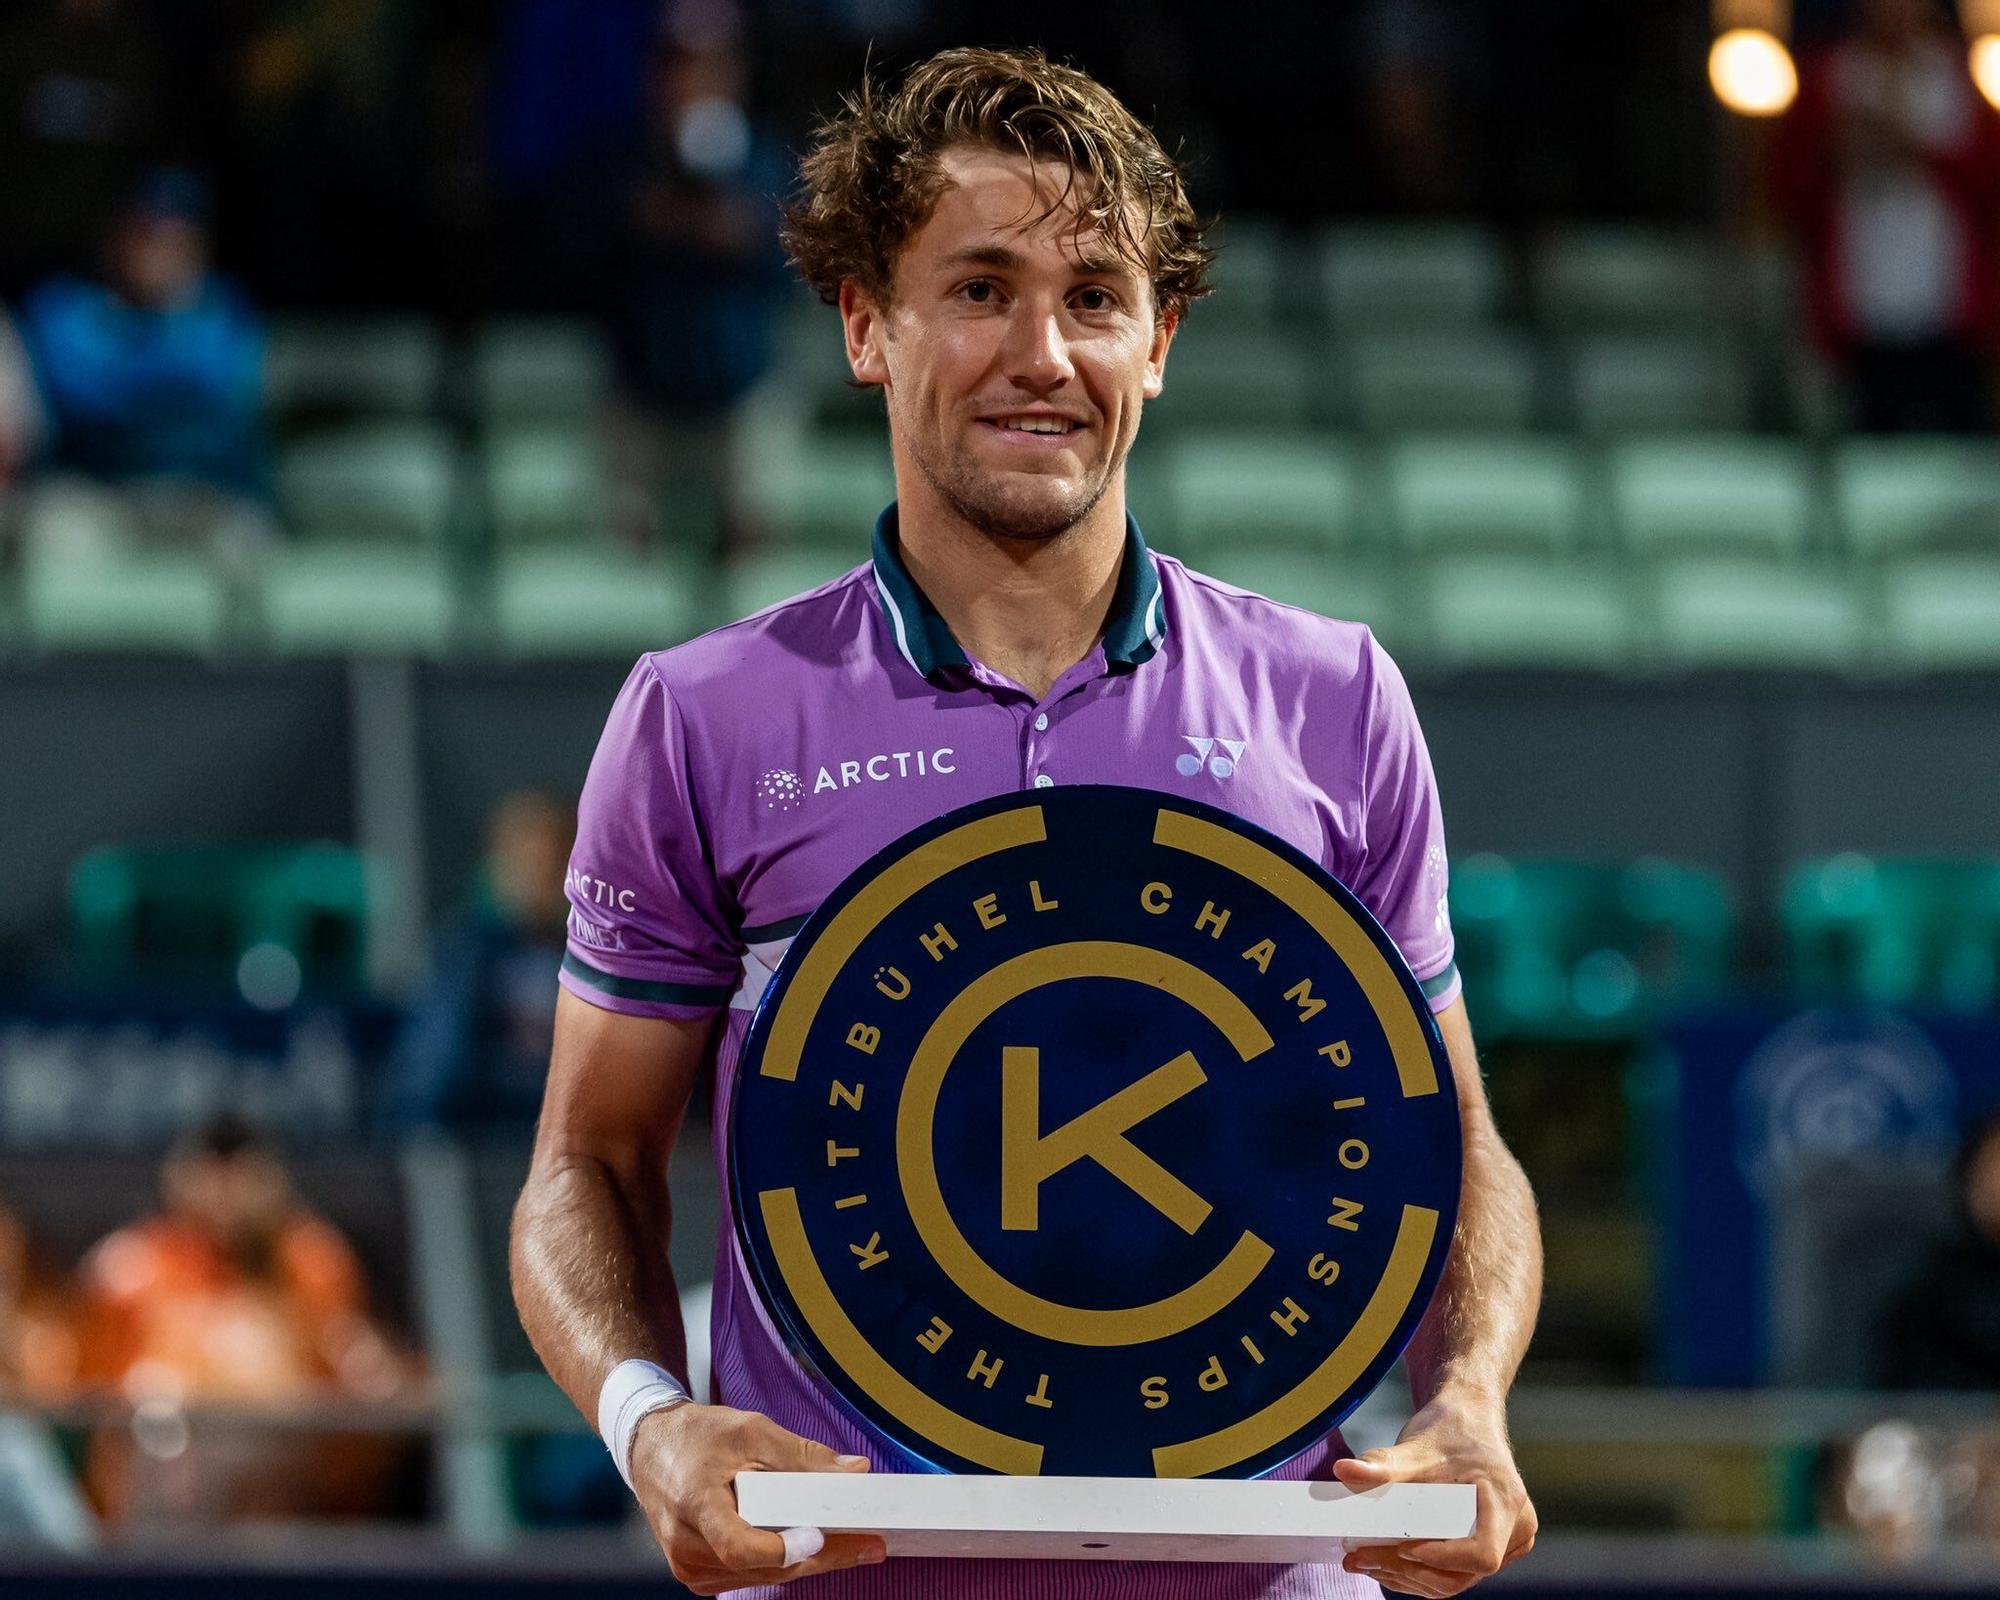 Ruud sostiene el título del Torneo de Kitzbühel, en una imagen reciente